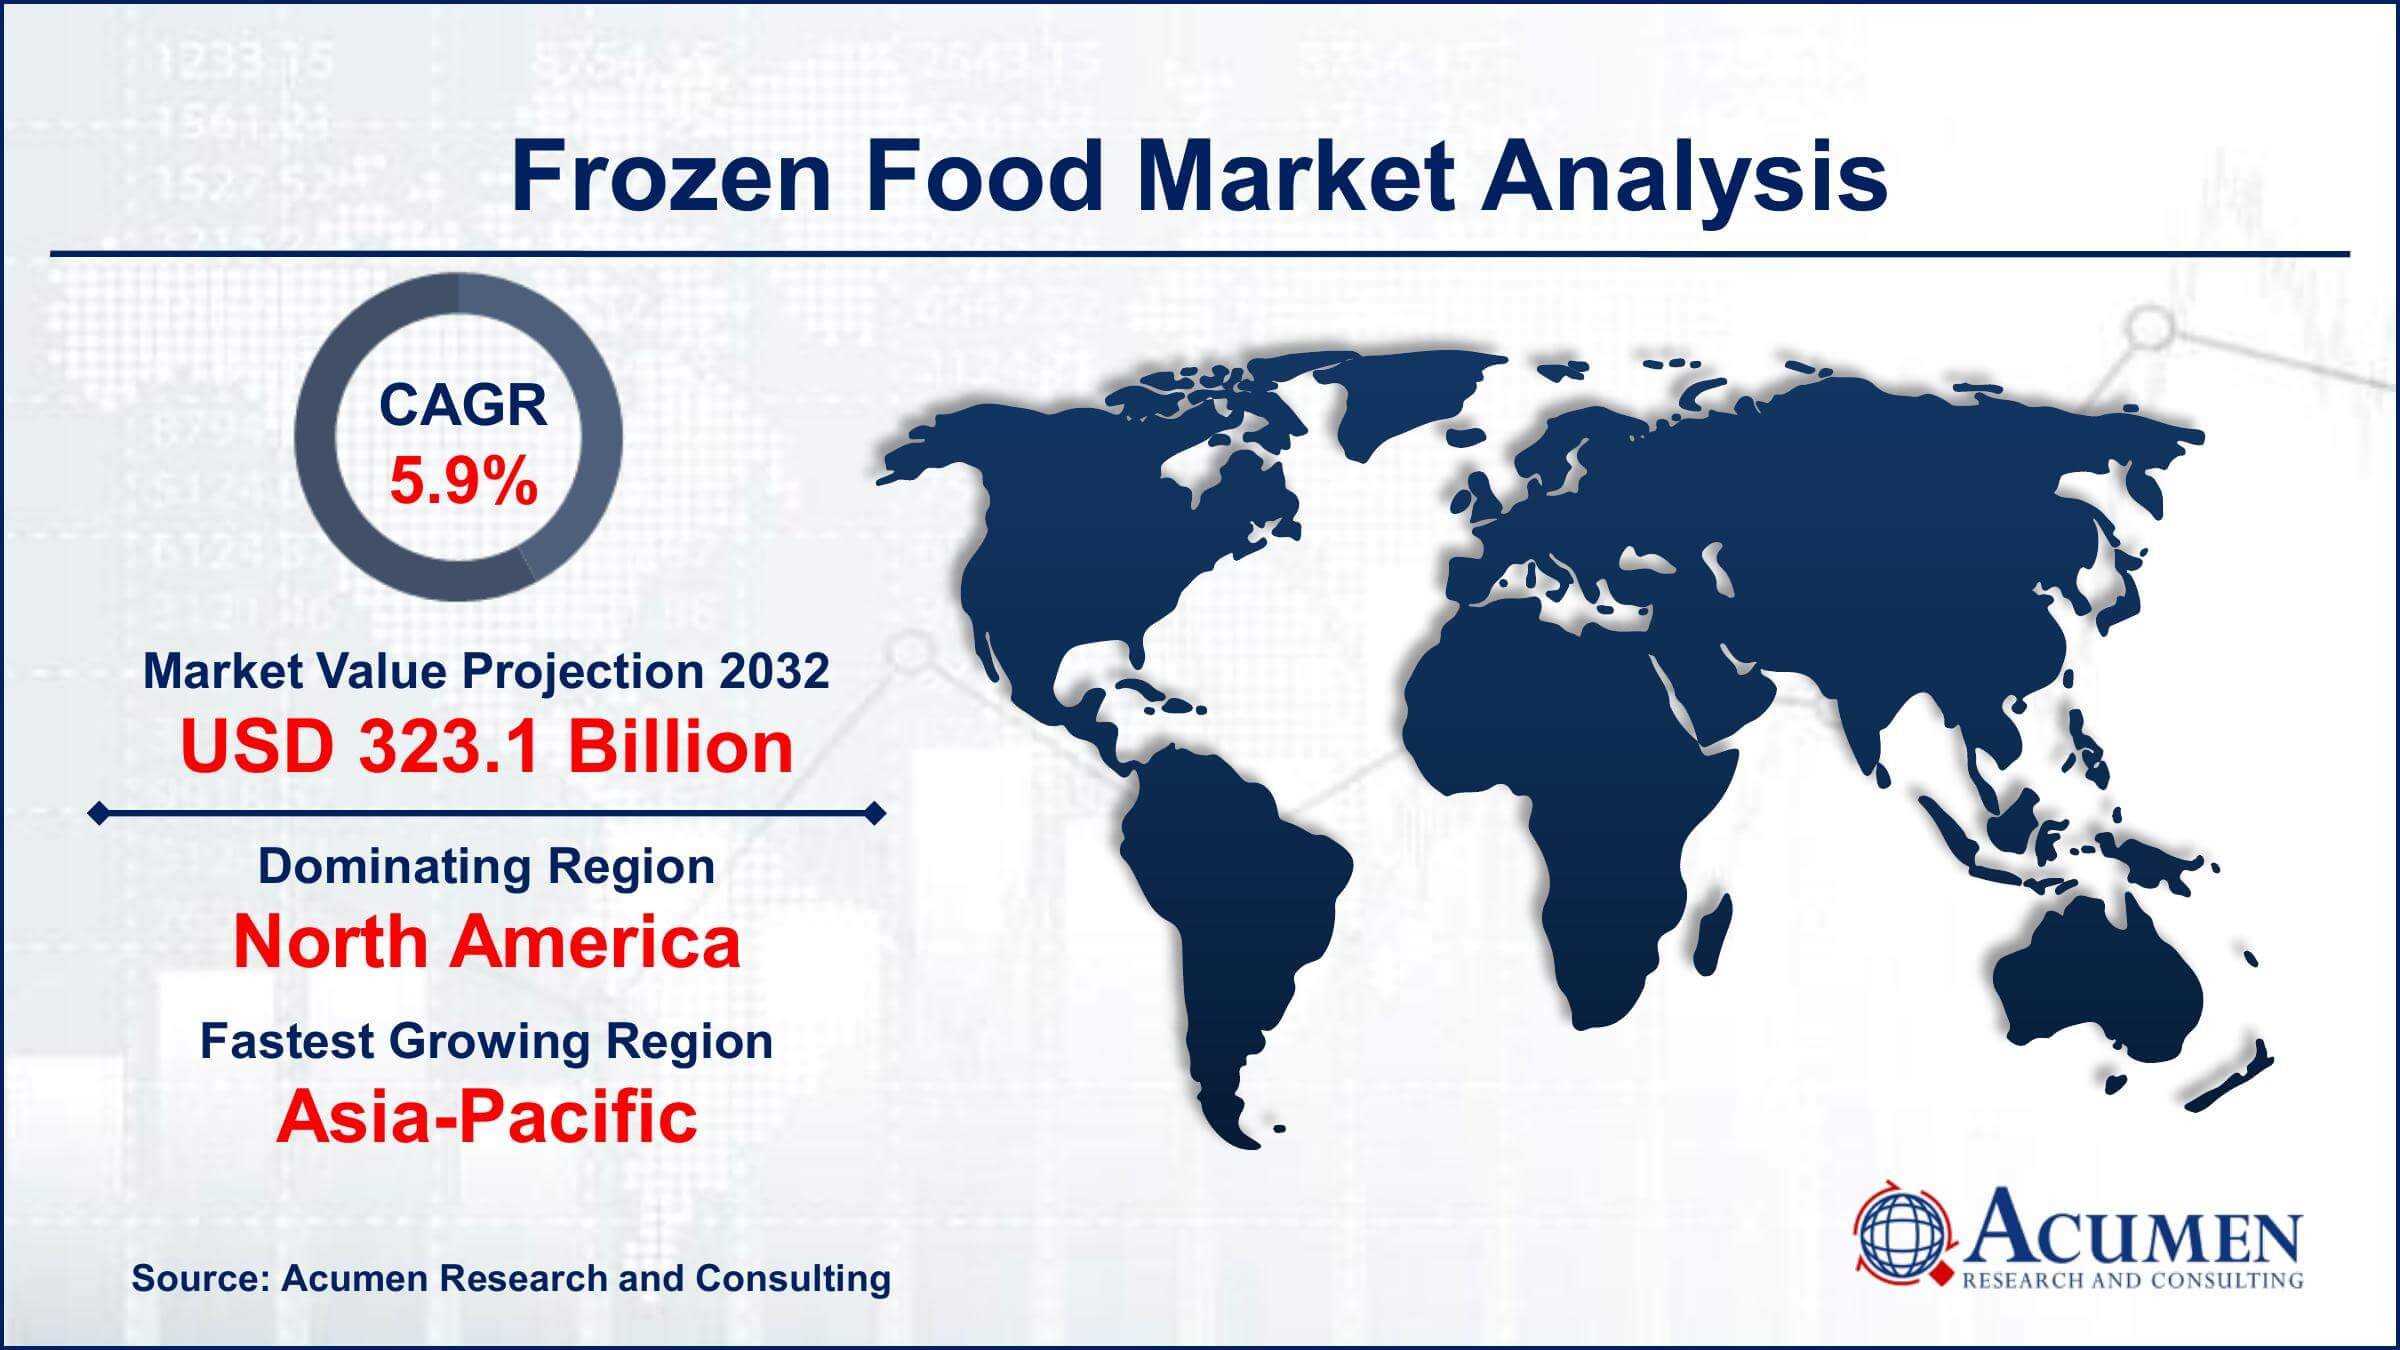 Global Frozen Food Market Trends